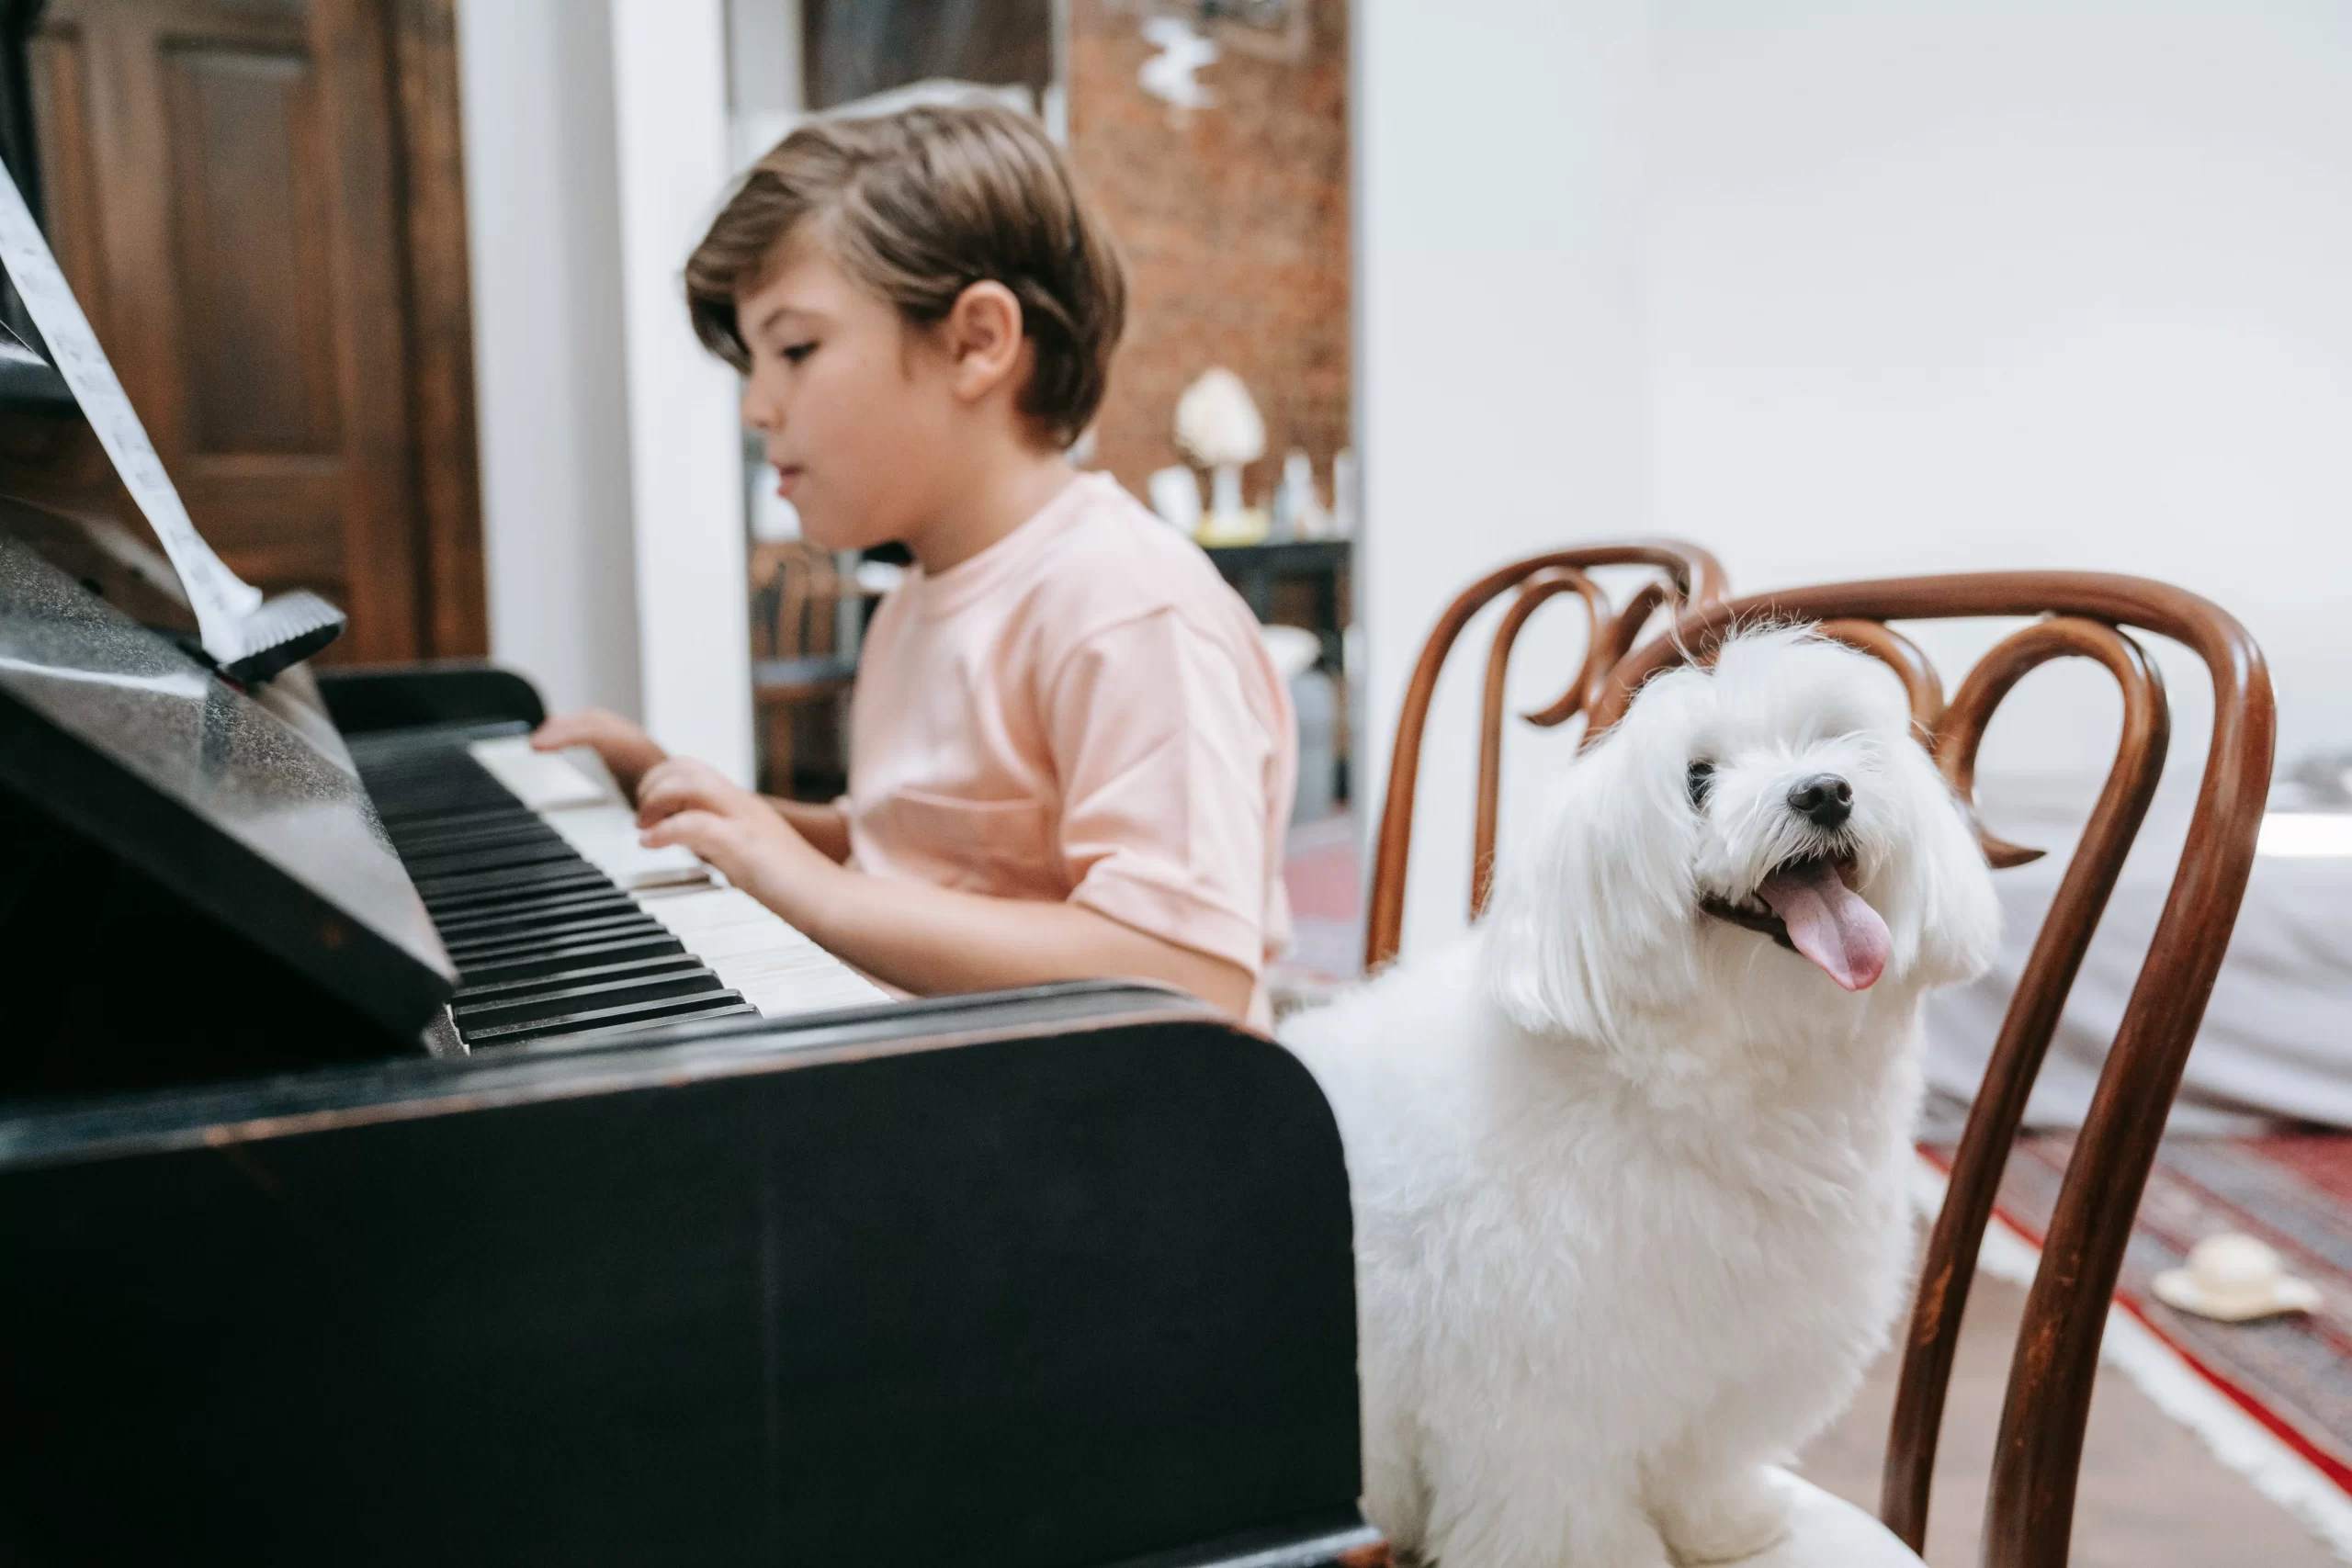 Học Piano Có Khó Không? Độ Tuổi Nào Thích Hợp Để Học Piano?